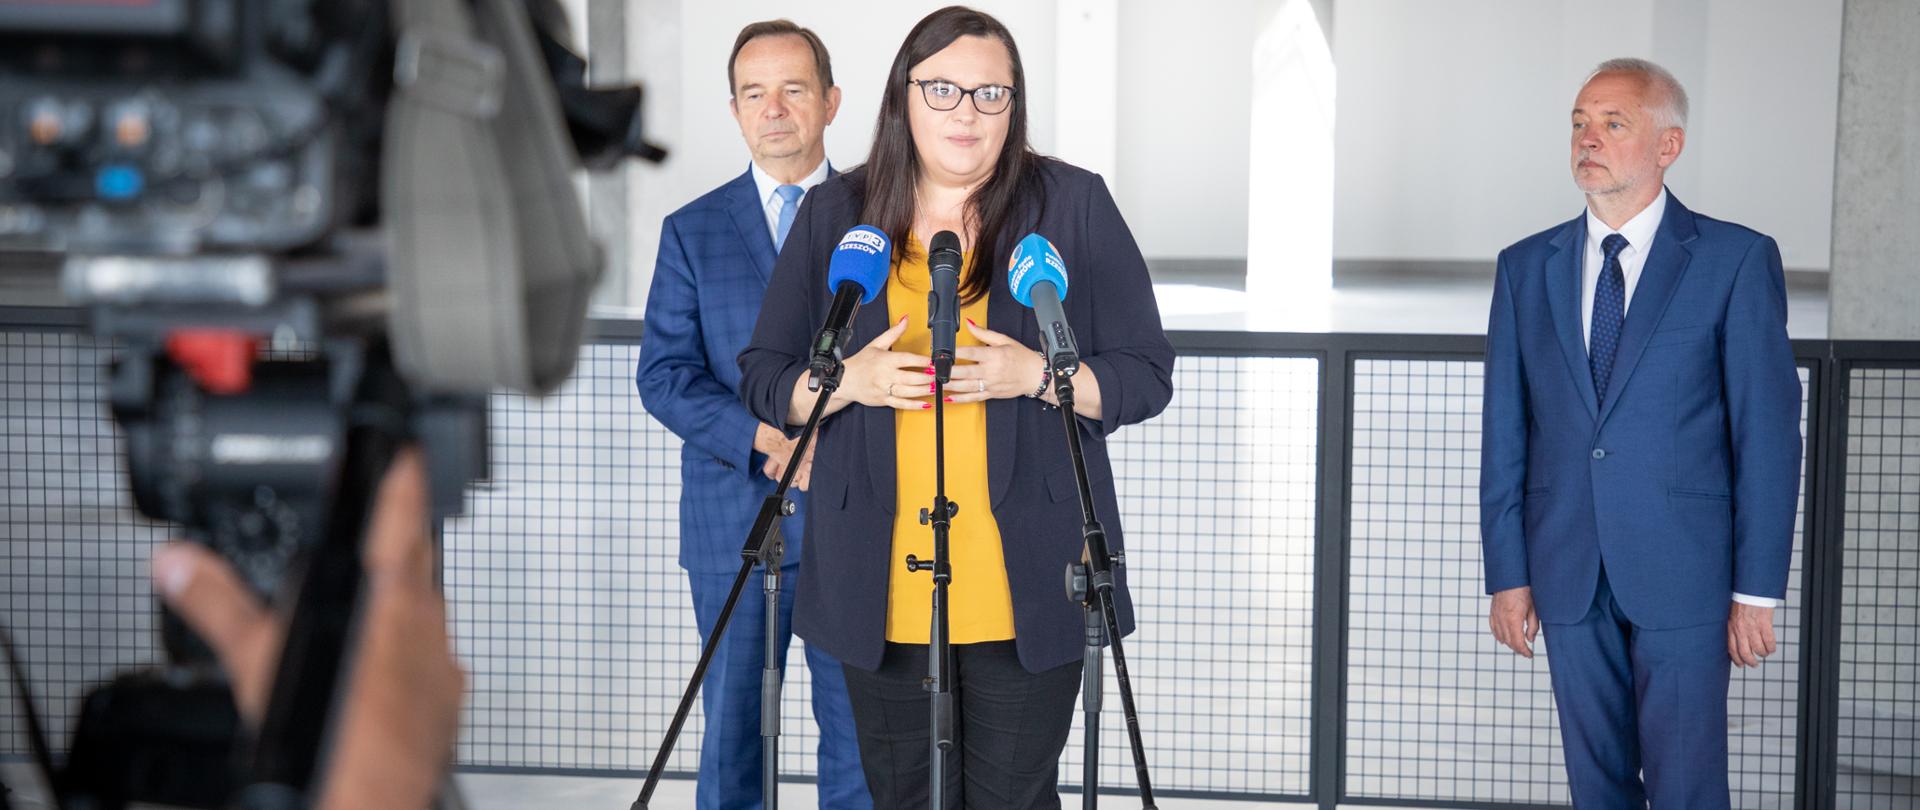 Przed mikrofonem stoi wiceminister Małgorzata Jarosińska-Jedynak. Za nią dwóch mężczyzn. Przed nimi kamera.